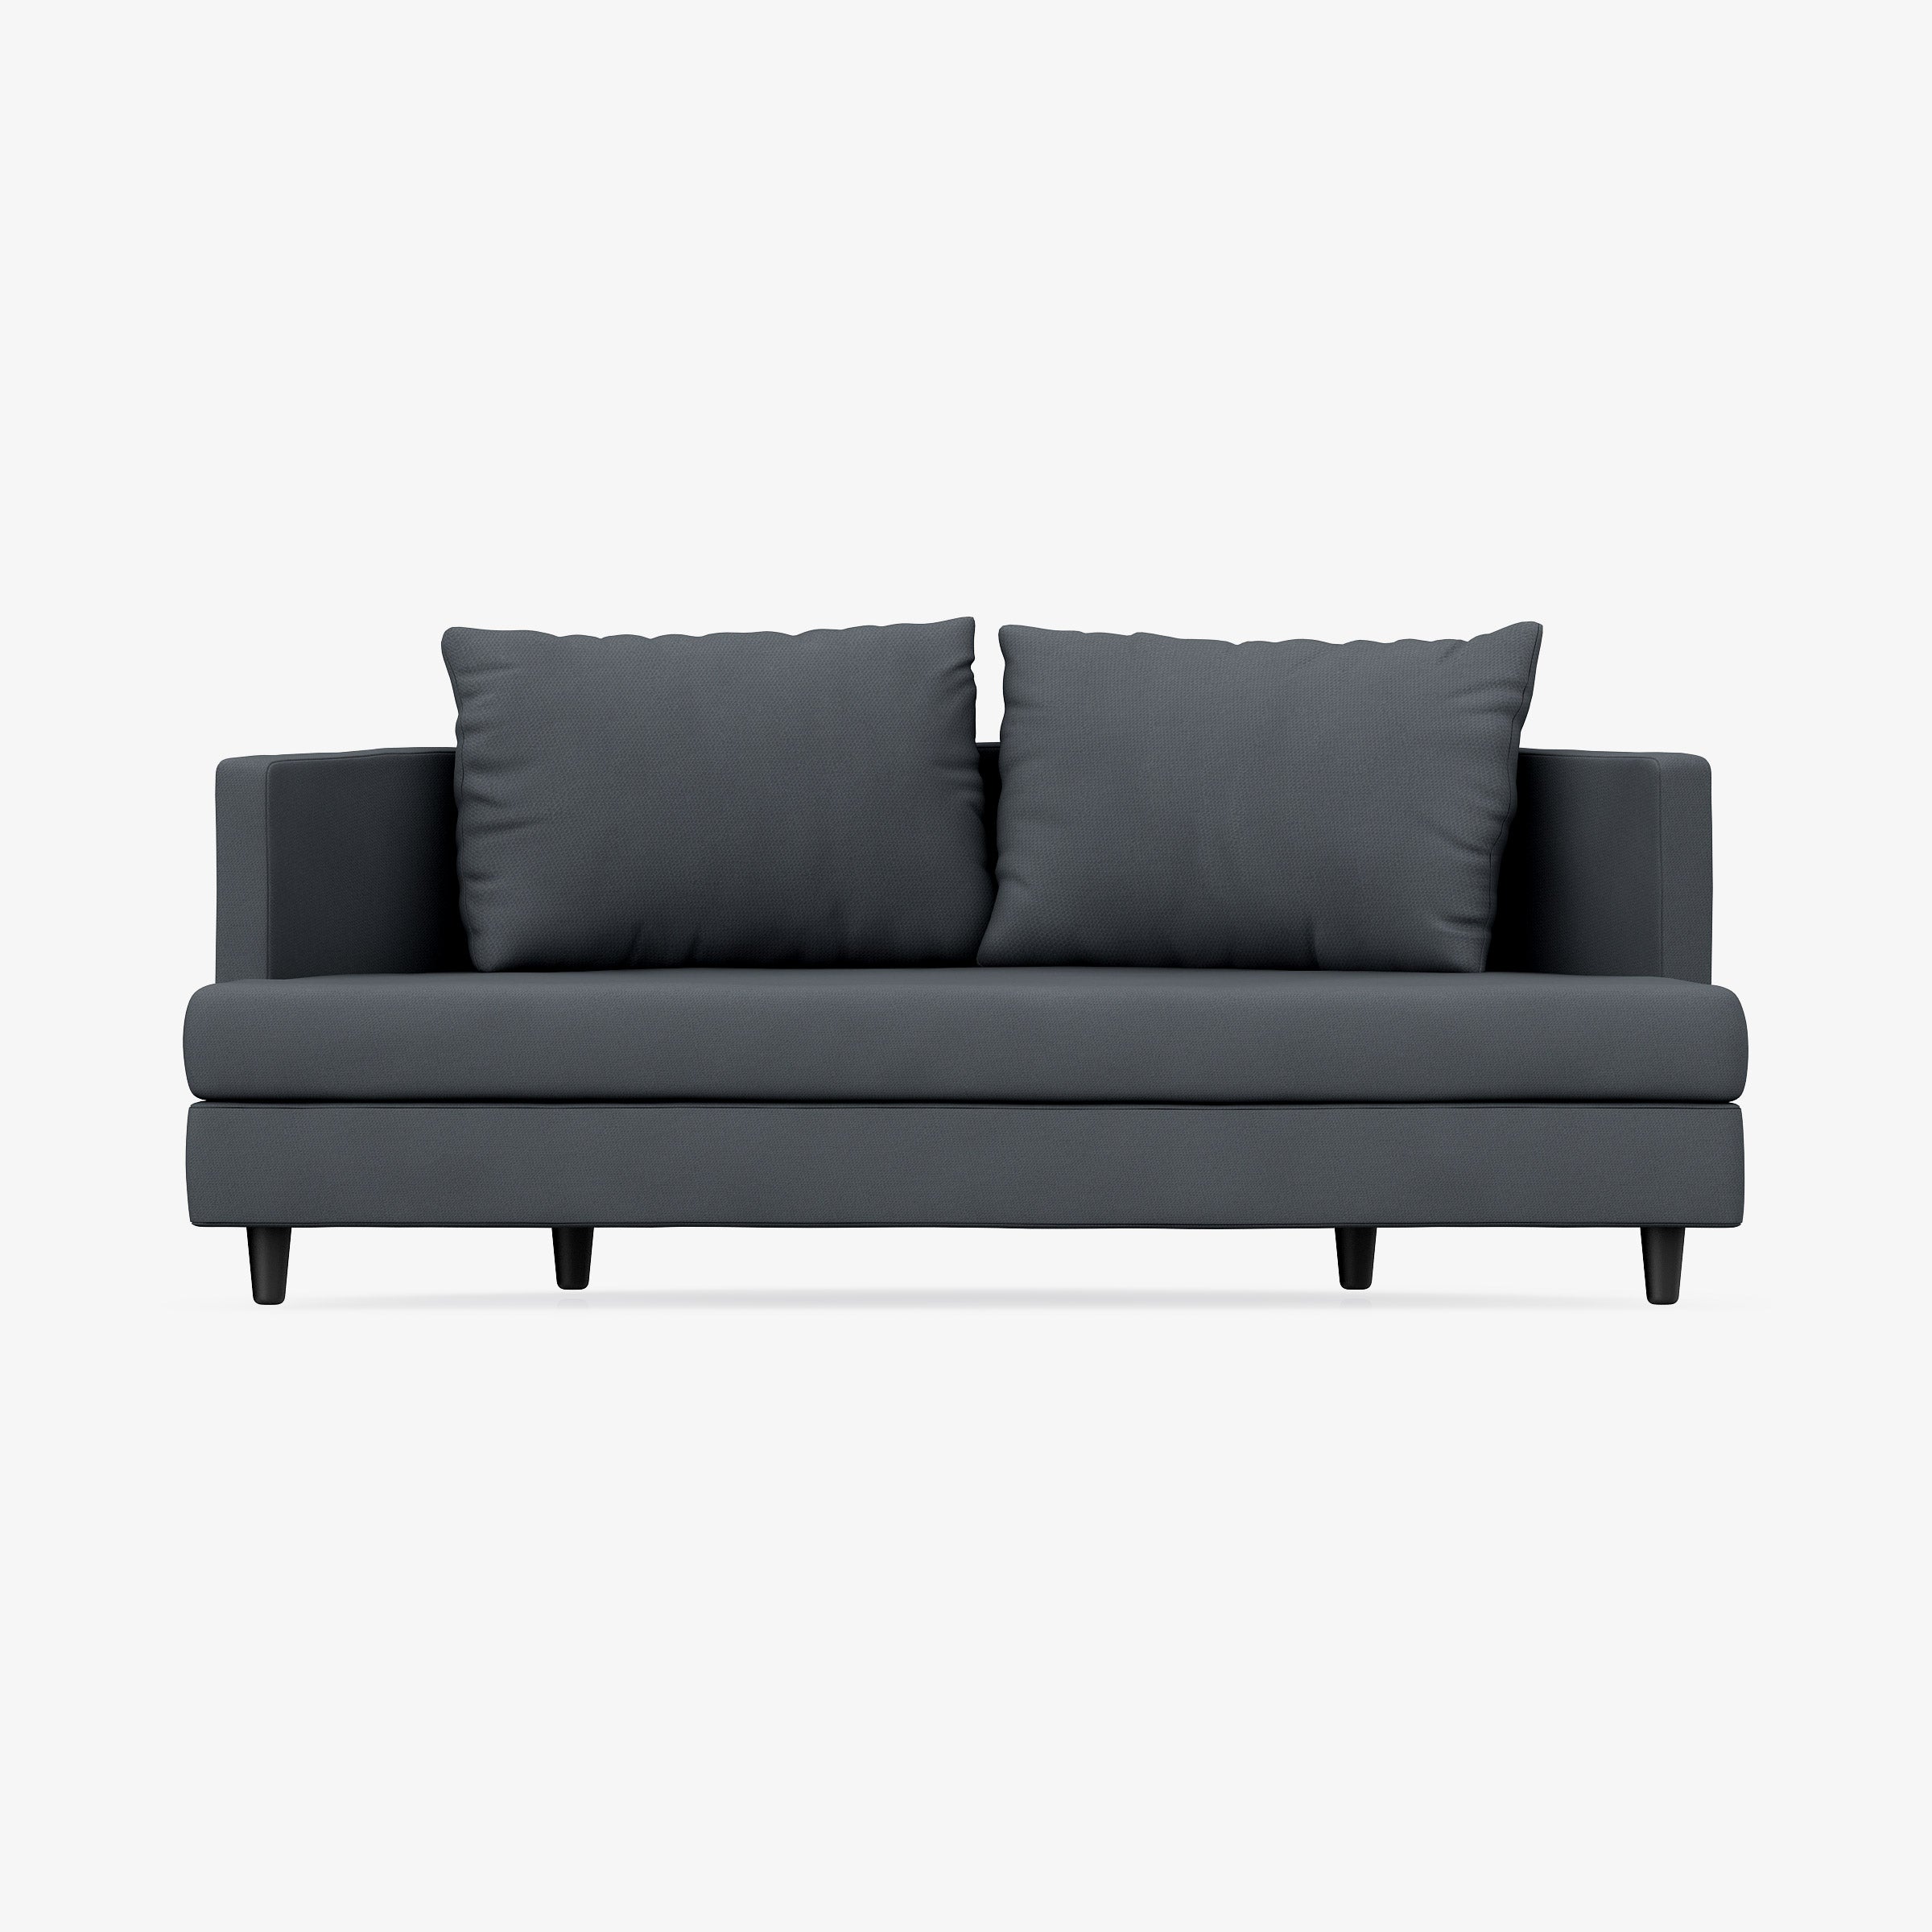 Conforto cosmopolita: sofá de alta costura